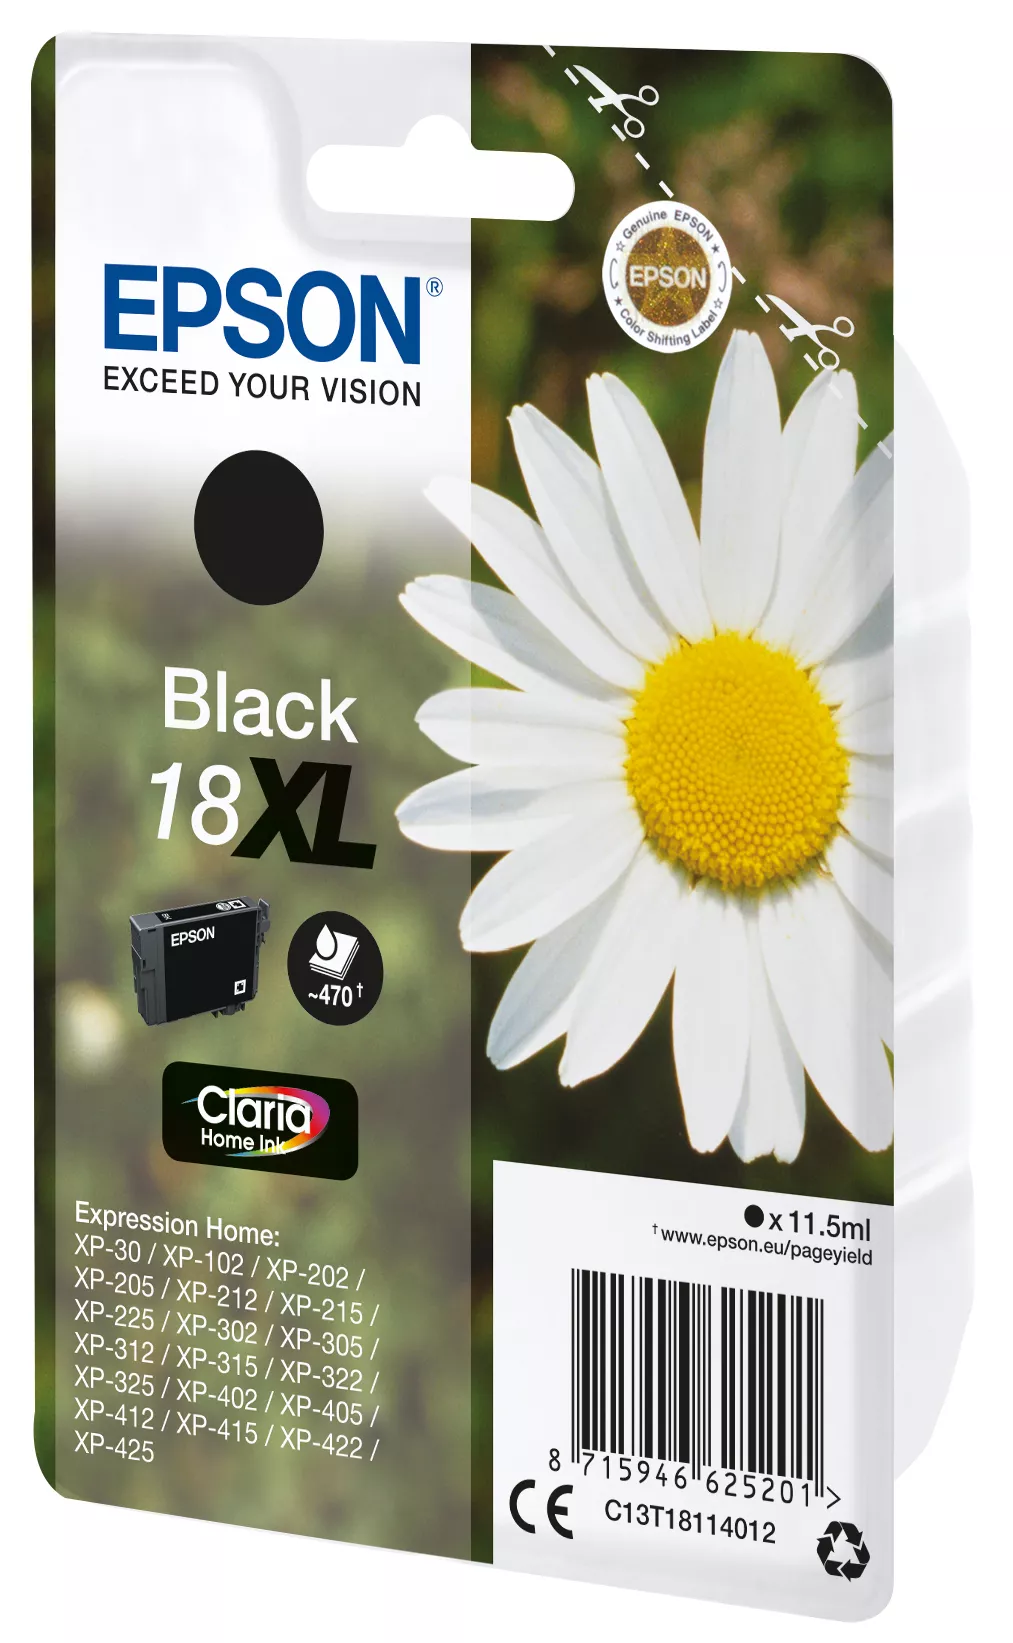 Vente EPSON 18XL cartouche d encre noir haute capacité Epson au meilleur prix - visuel 2